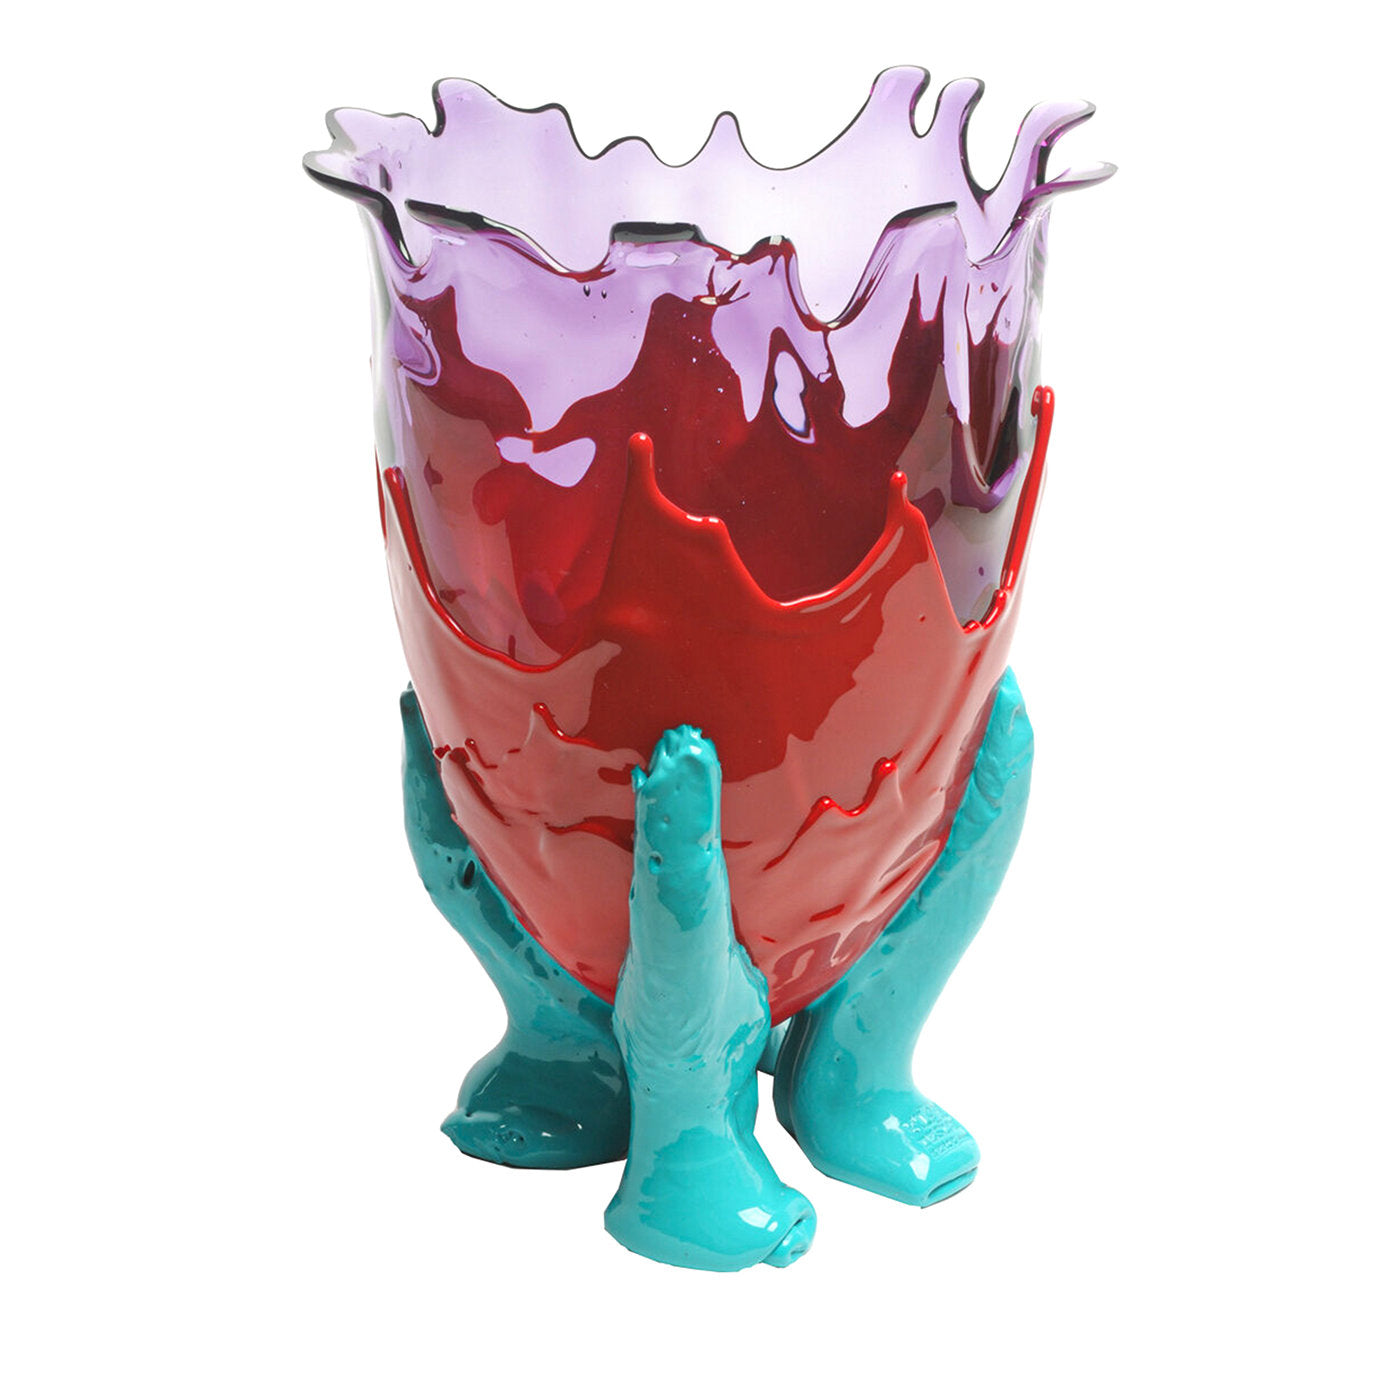 Grand vase clair Extracolor de Gaetano Pesce - Vue principale